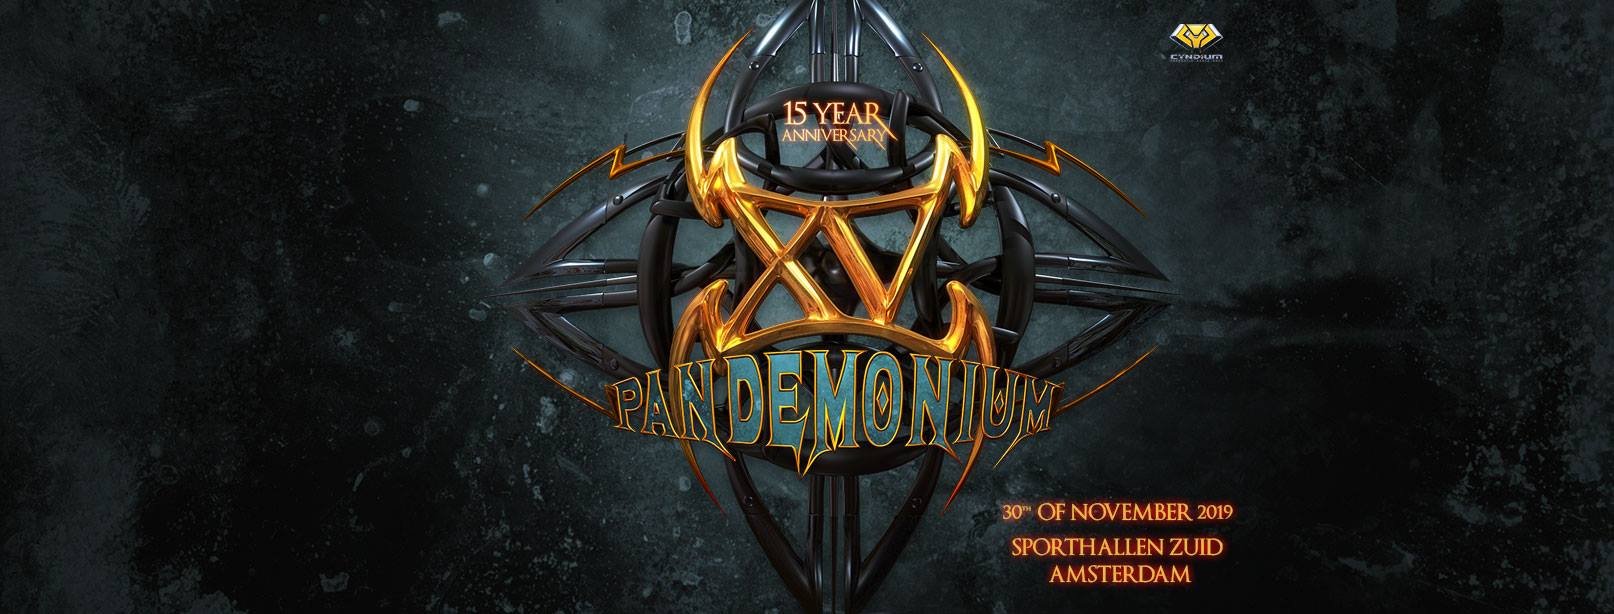 pandemonium-15-year-anniversary-30-11-2019